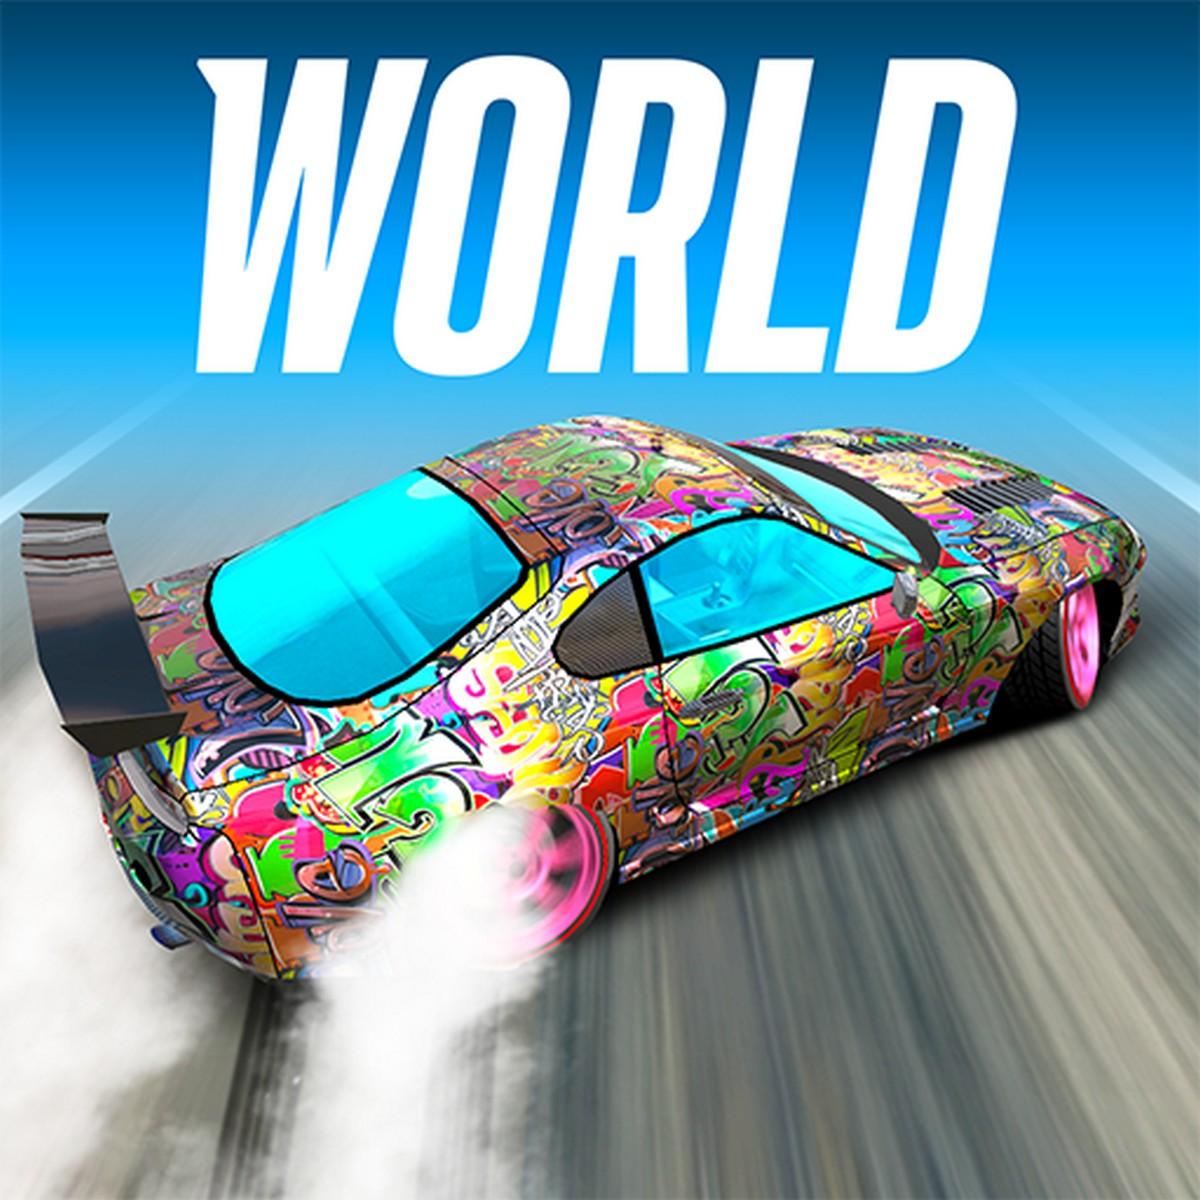 Drift Max World APK MOD v2.0.1 (Dinero infinito)